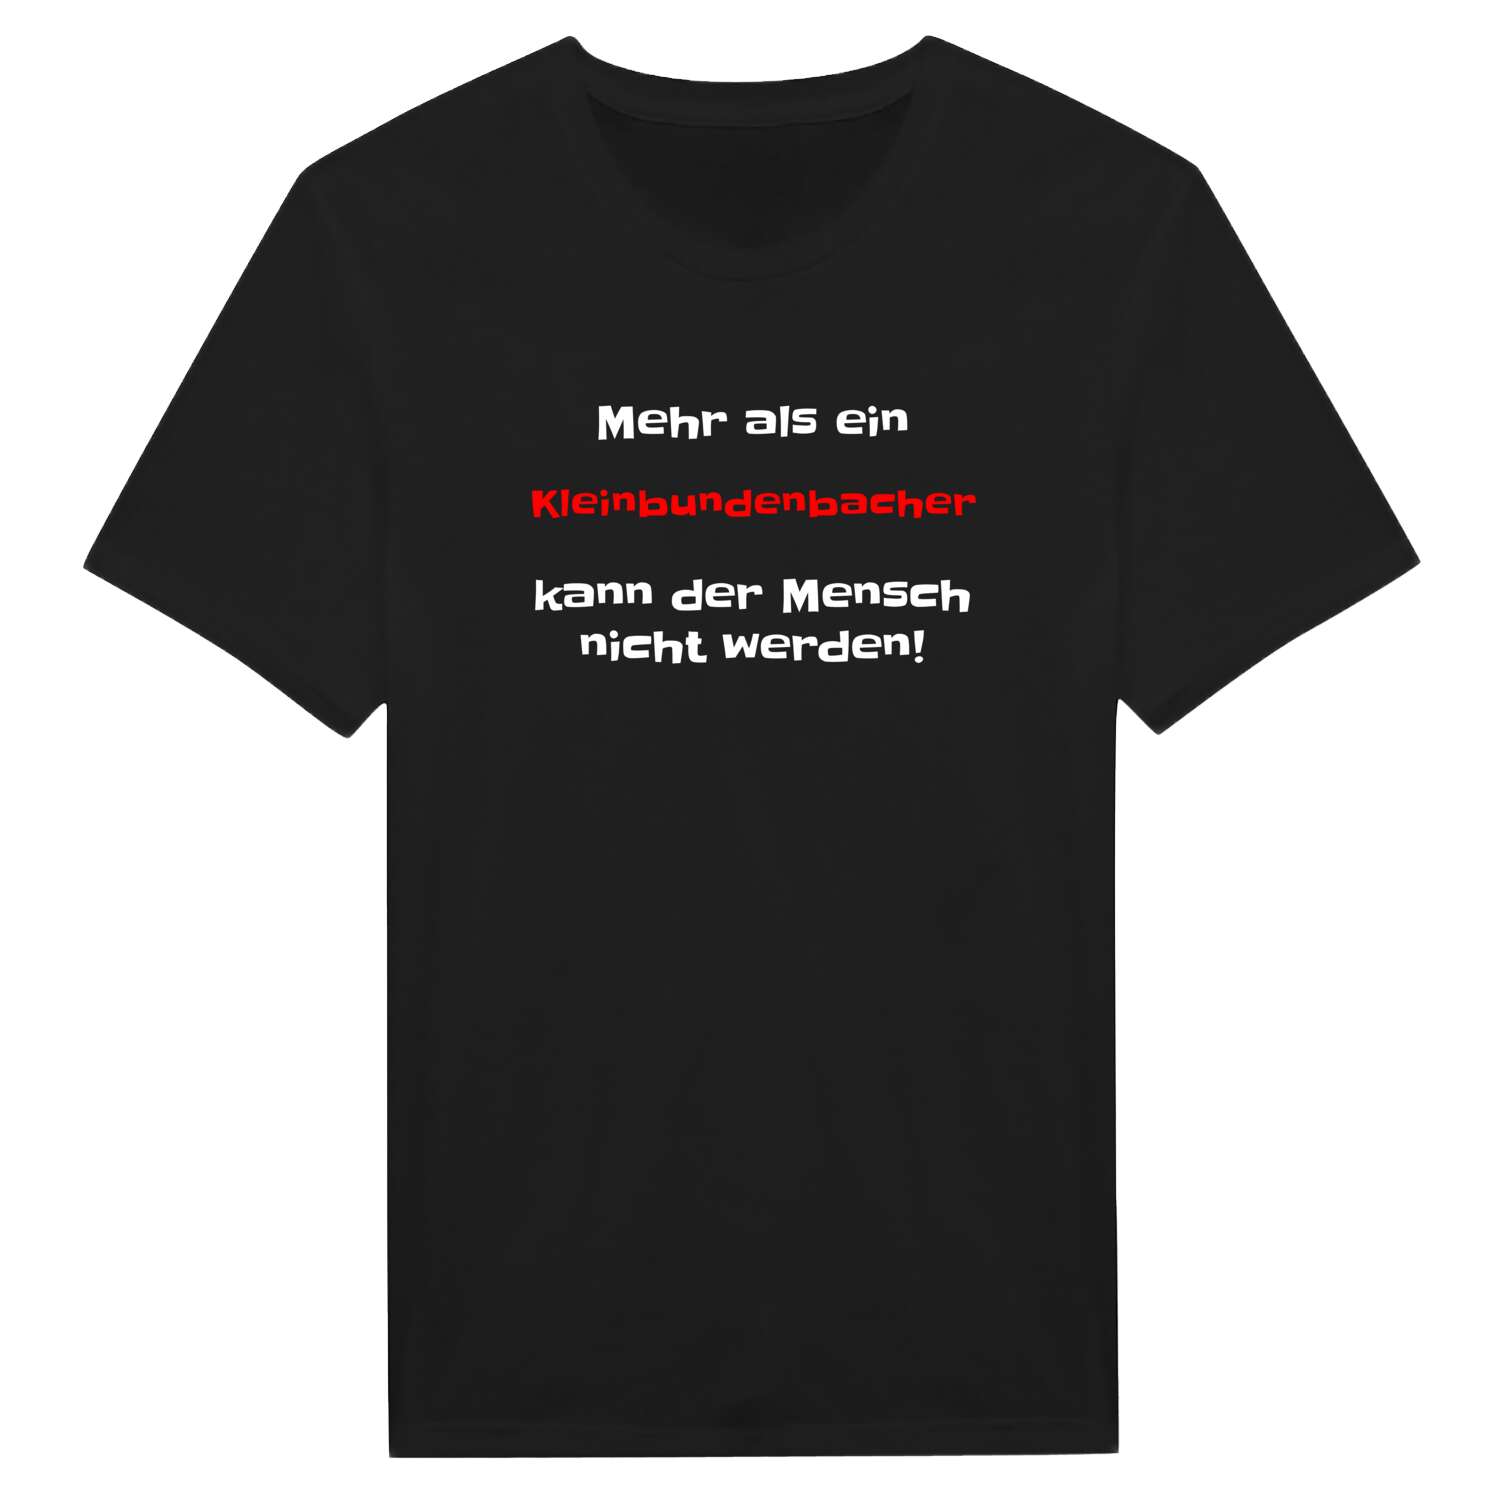 Kleinbundenbach T-Shirt »Mehr als ein«